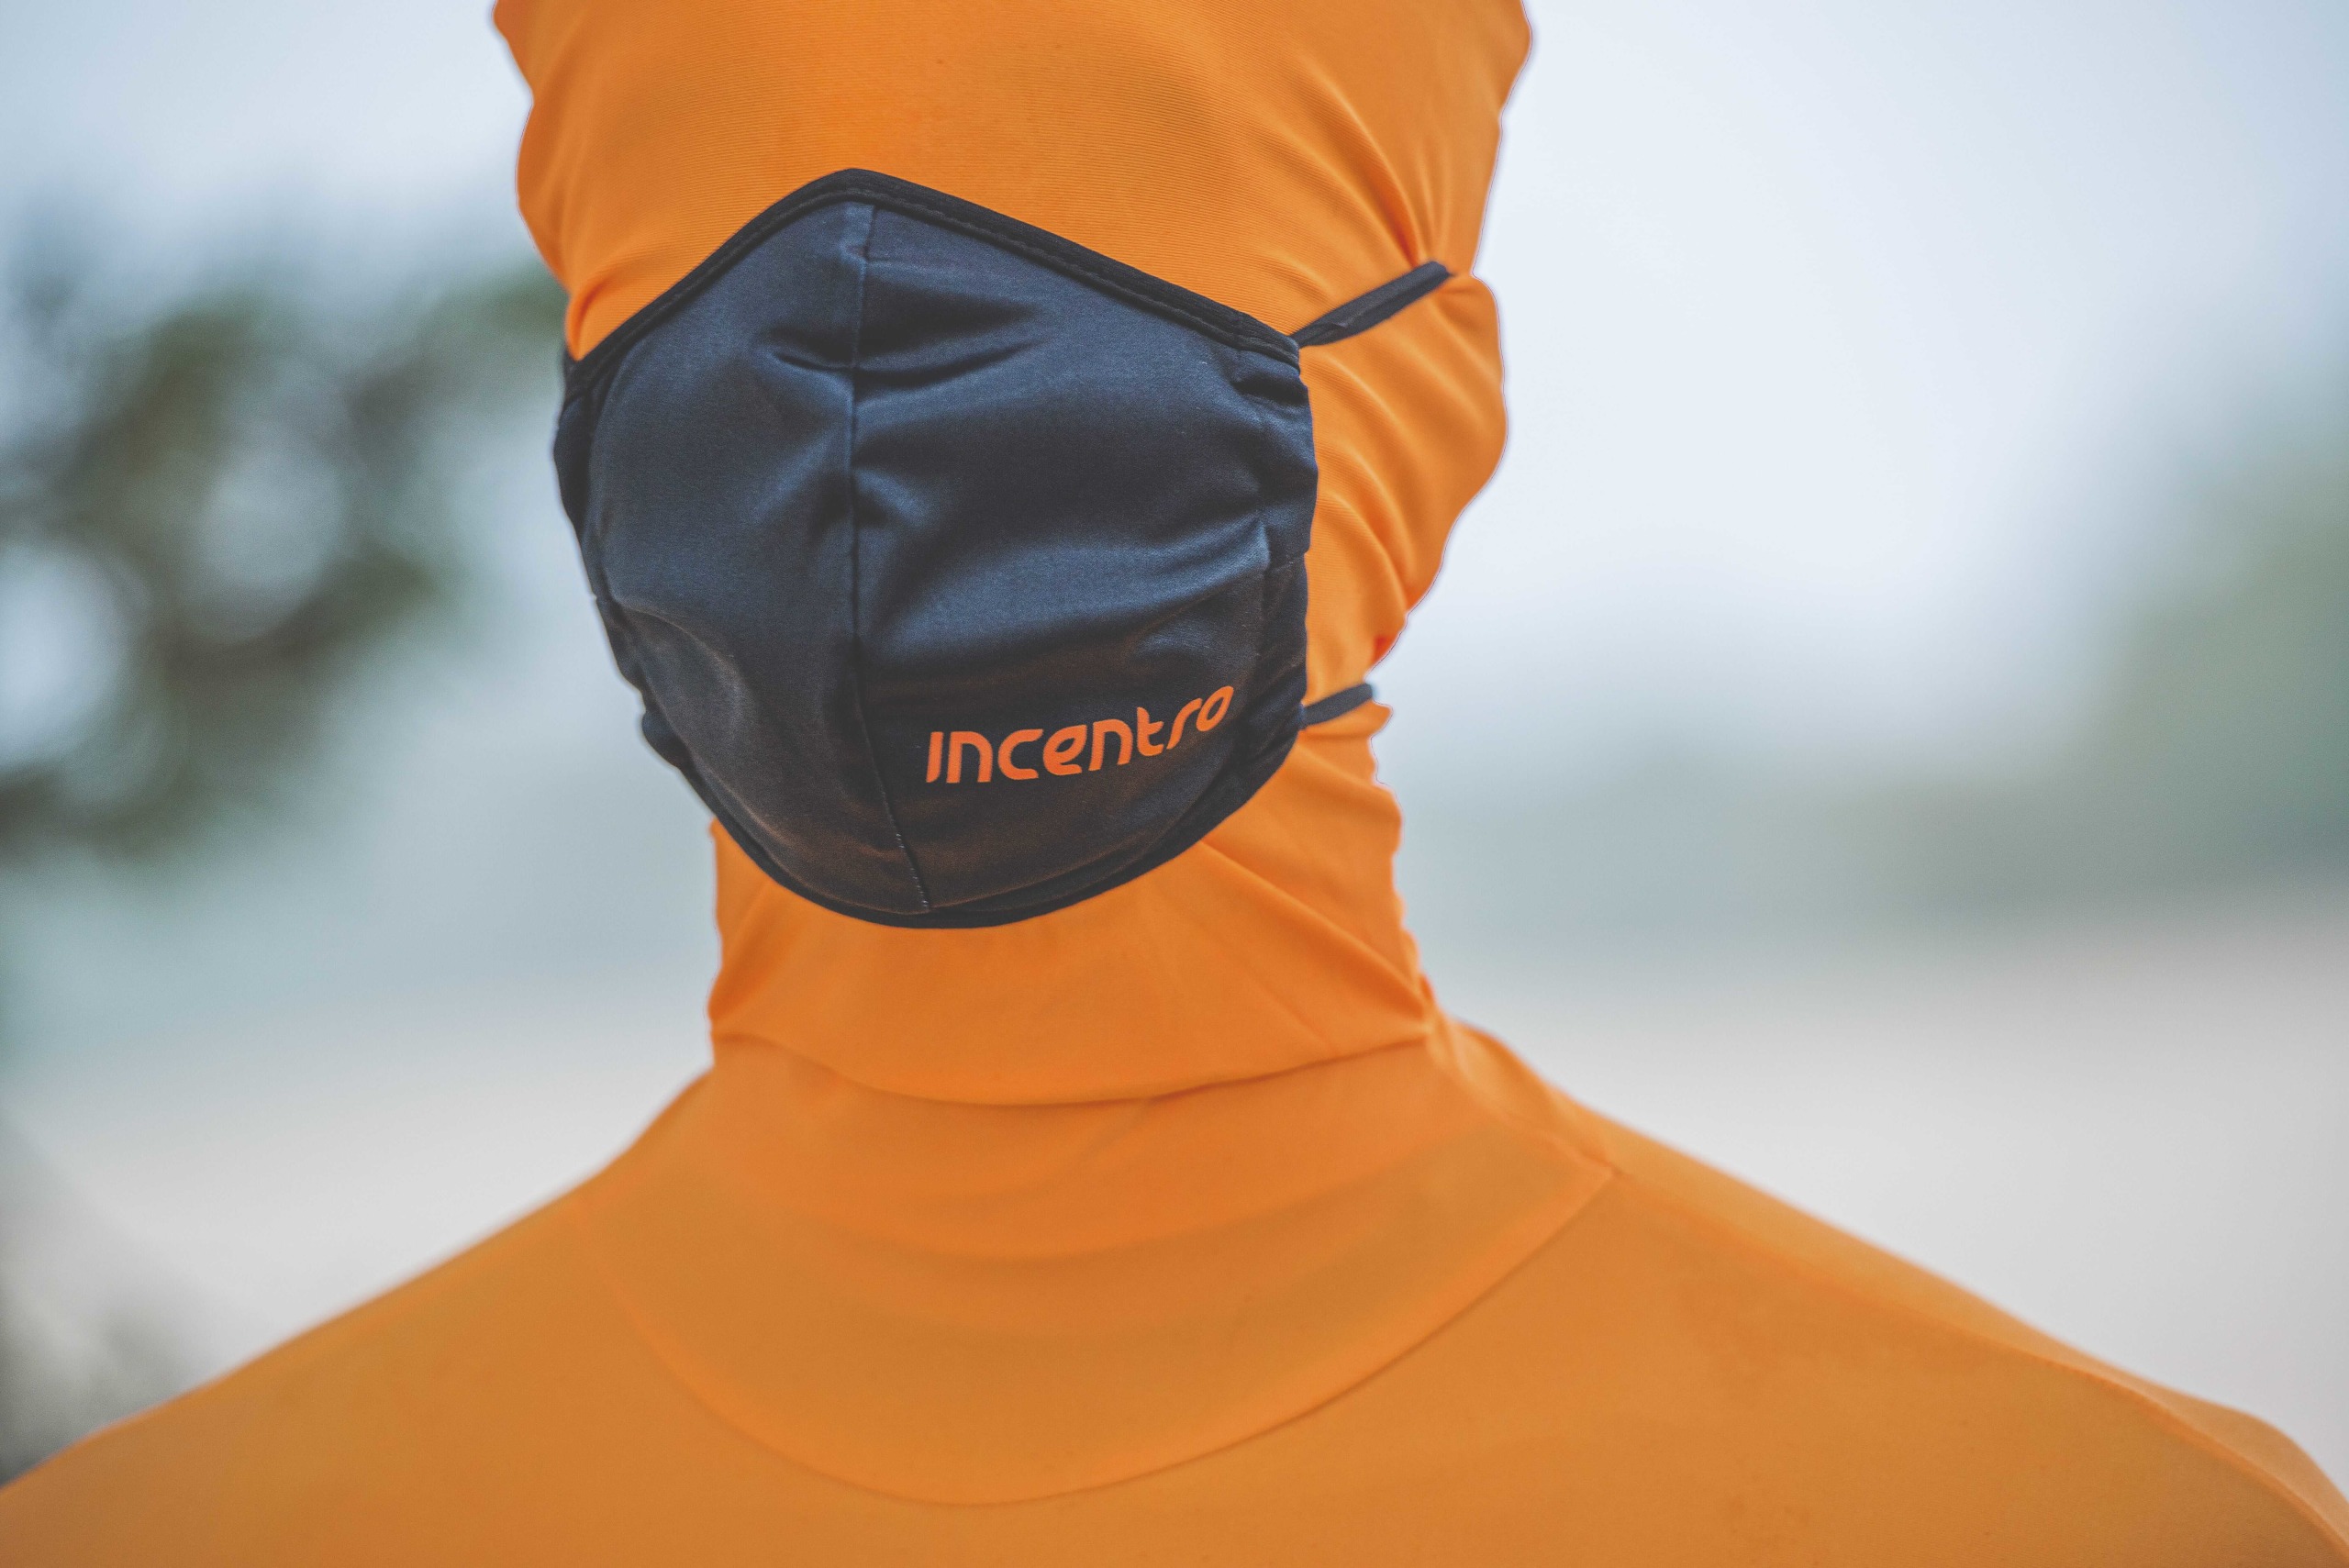 incentro mask protection orange guy